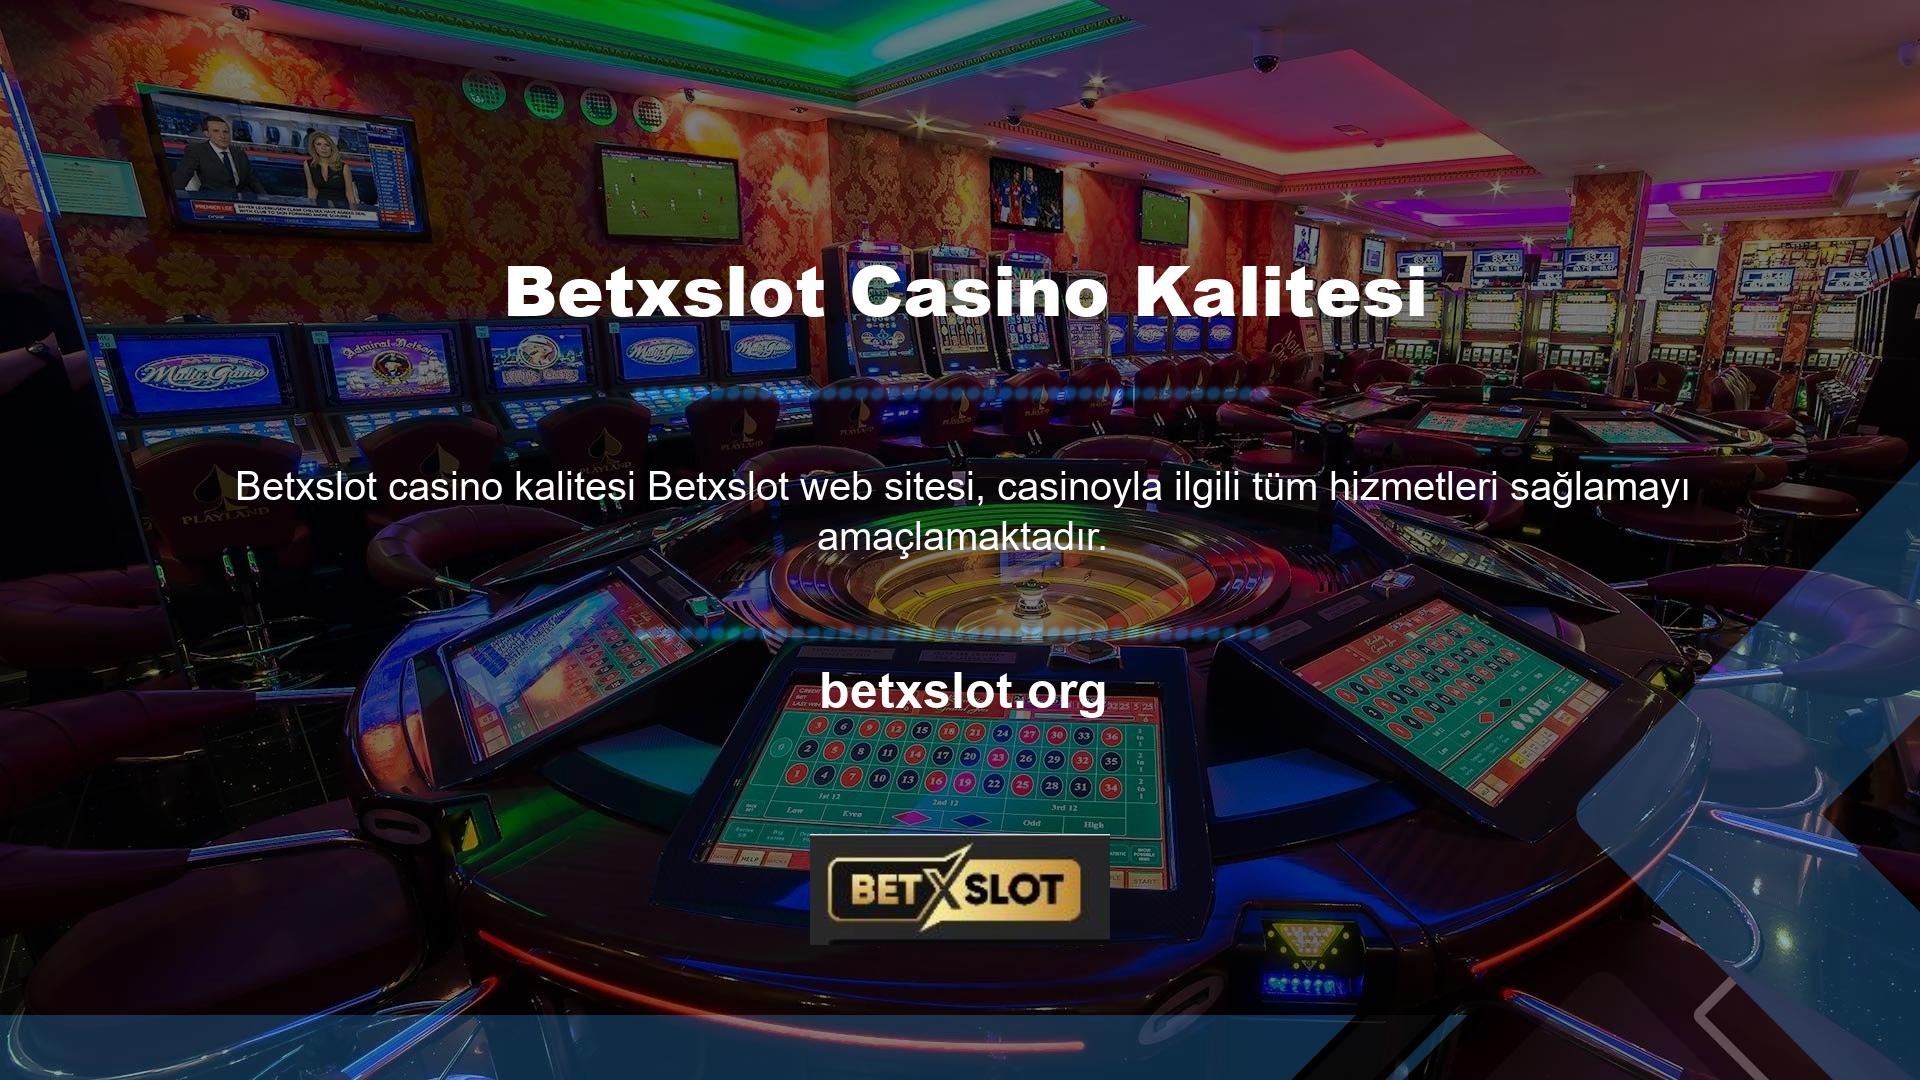 Kazanan site Betxslot ayrıca piyango ve sanal casino hizmetleri de sunmaktadır